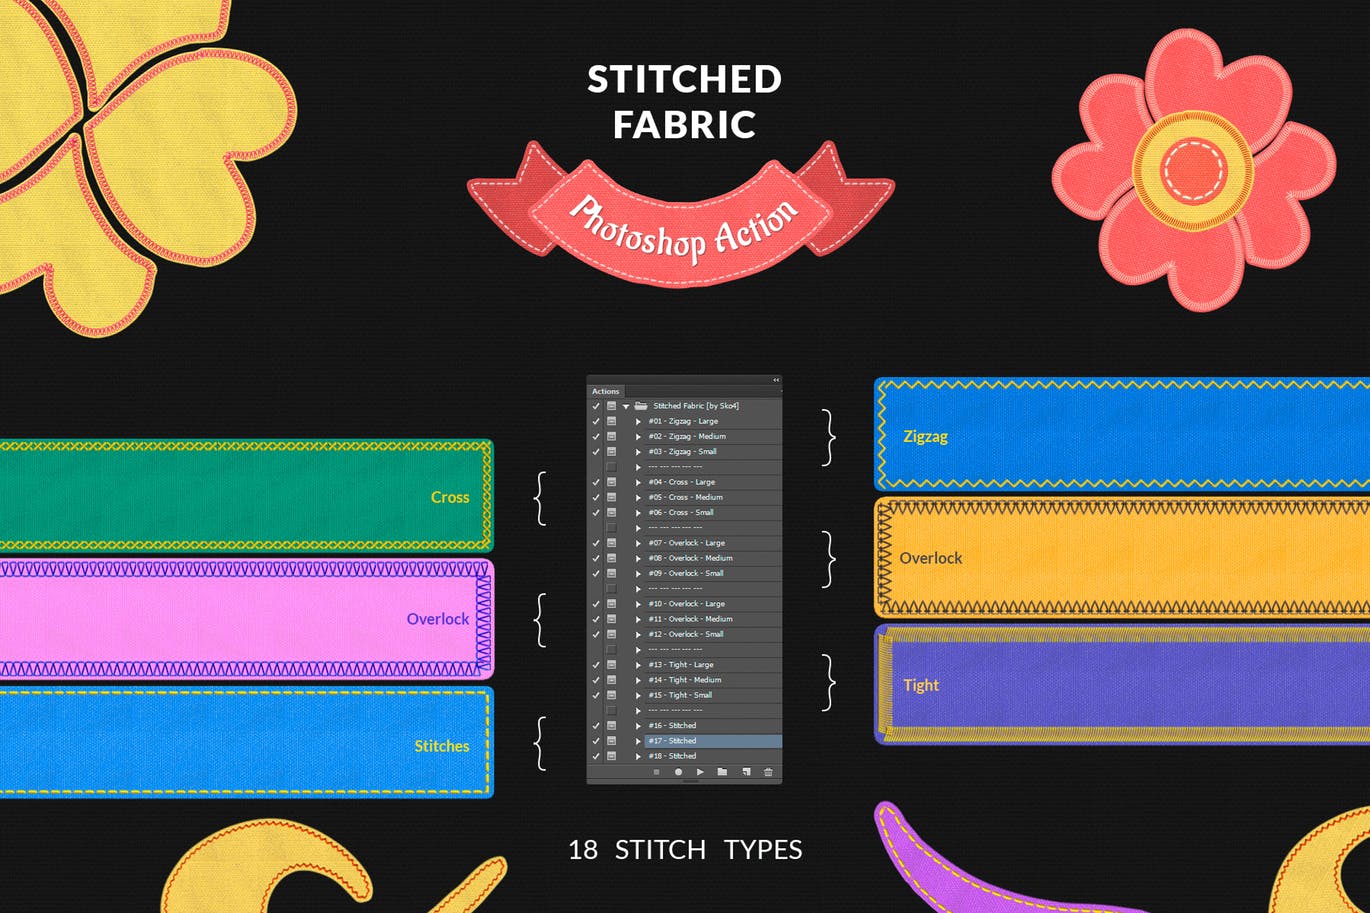 面料缝合缝线针织效果印花图案设计PS动作 Stitched Fabric Photoshop Action插图(4)